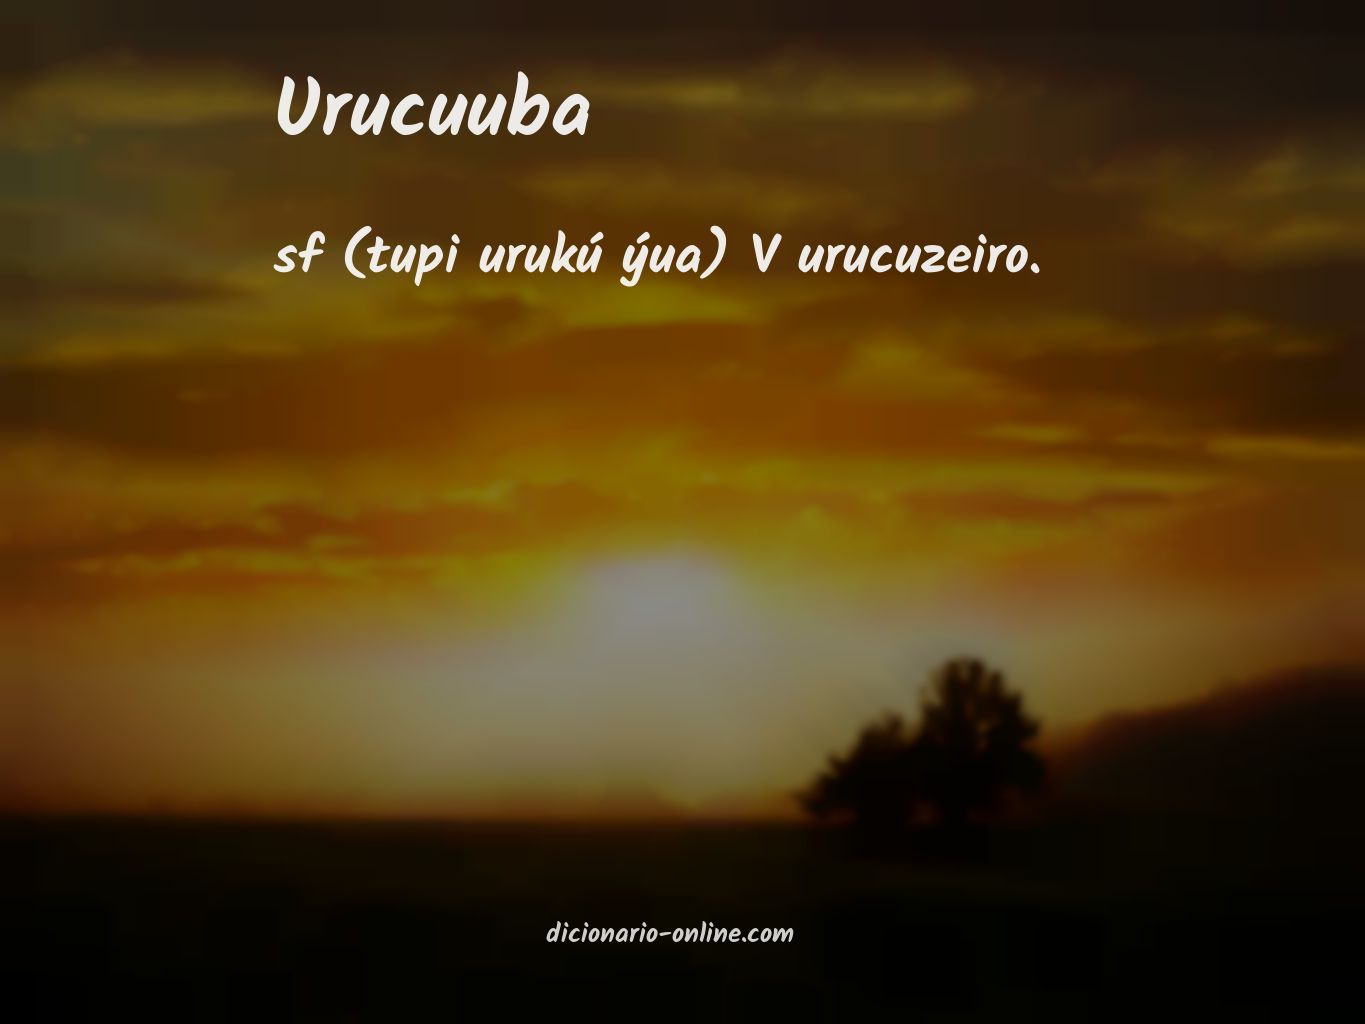 Significado de urucuuba